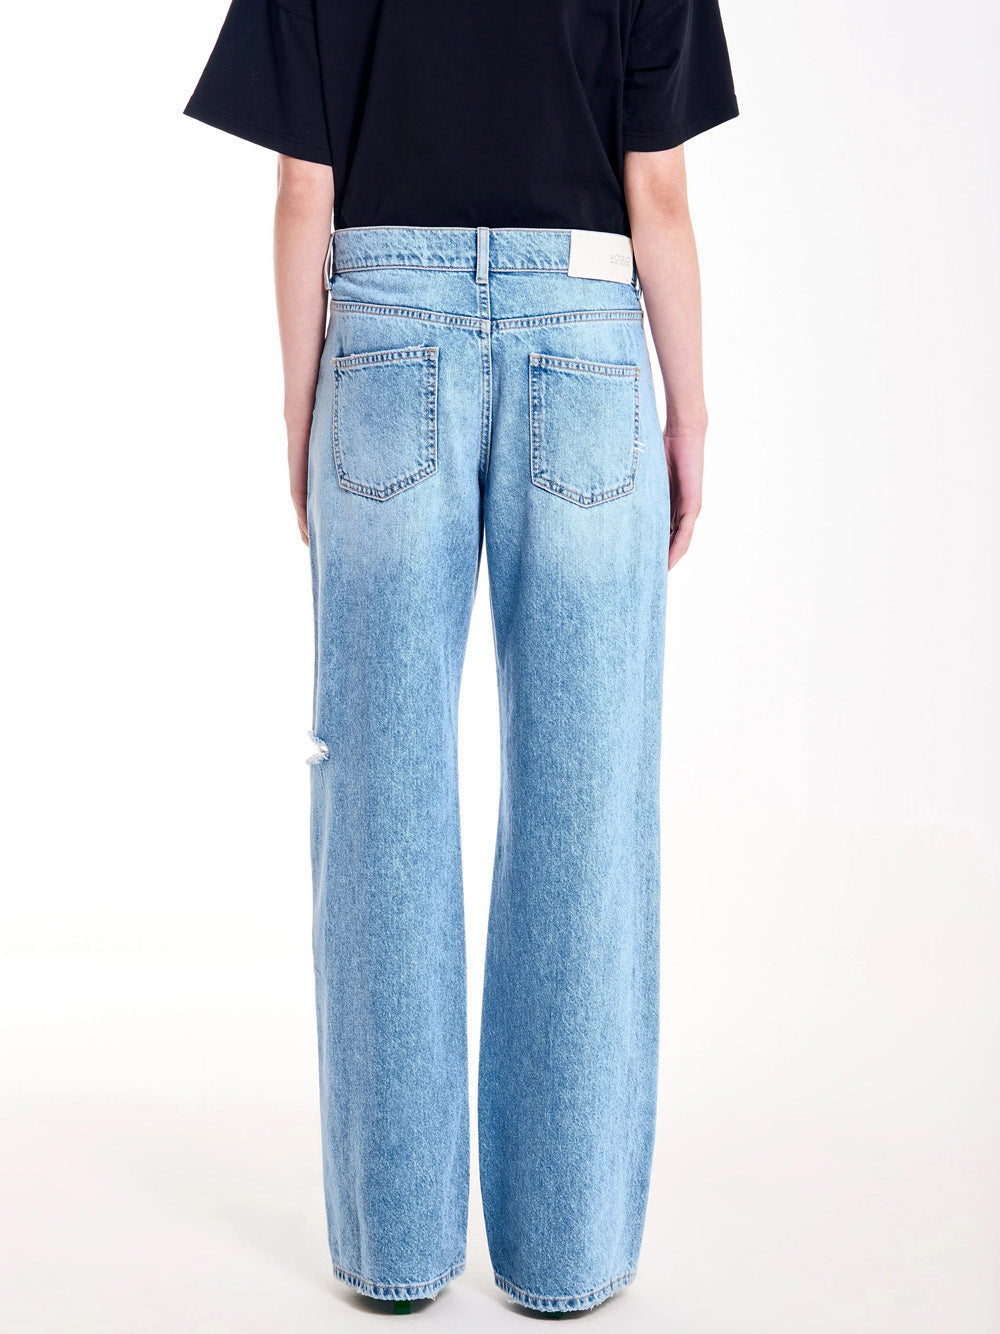 VICOLO Pantalone Donna - Blu modello DB5070